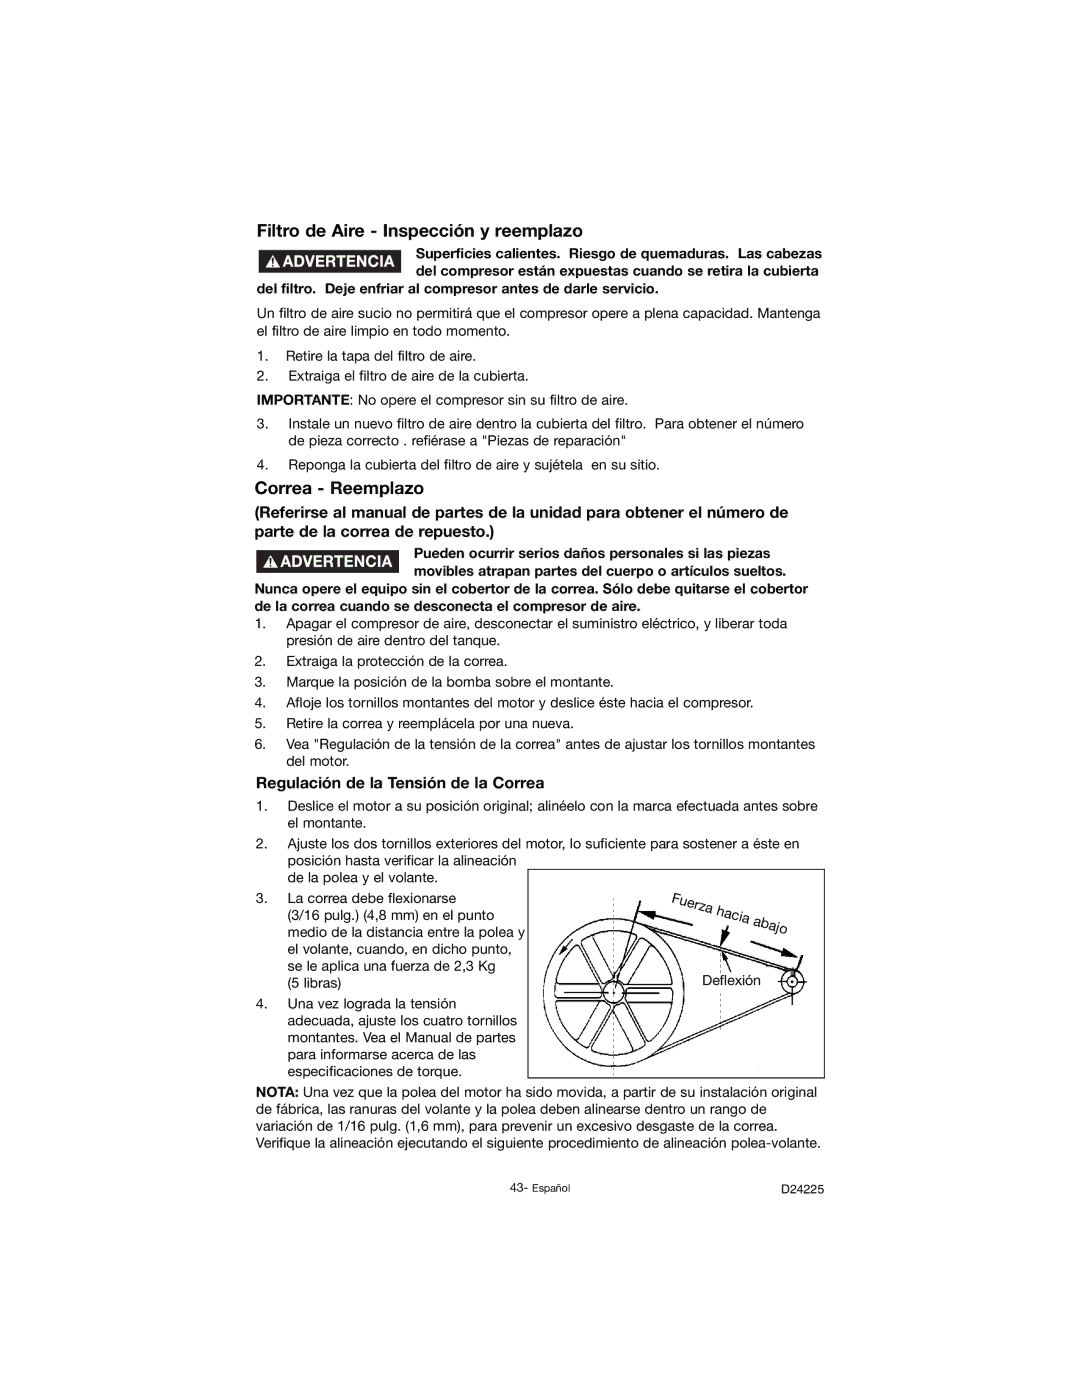 Porter-Cable D24225-049-2 Filtro de Aire Inspección y reemplazo, Correa Reemplazo, Regulación de la Tensión de la Correa 